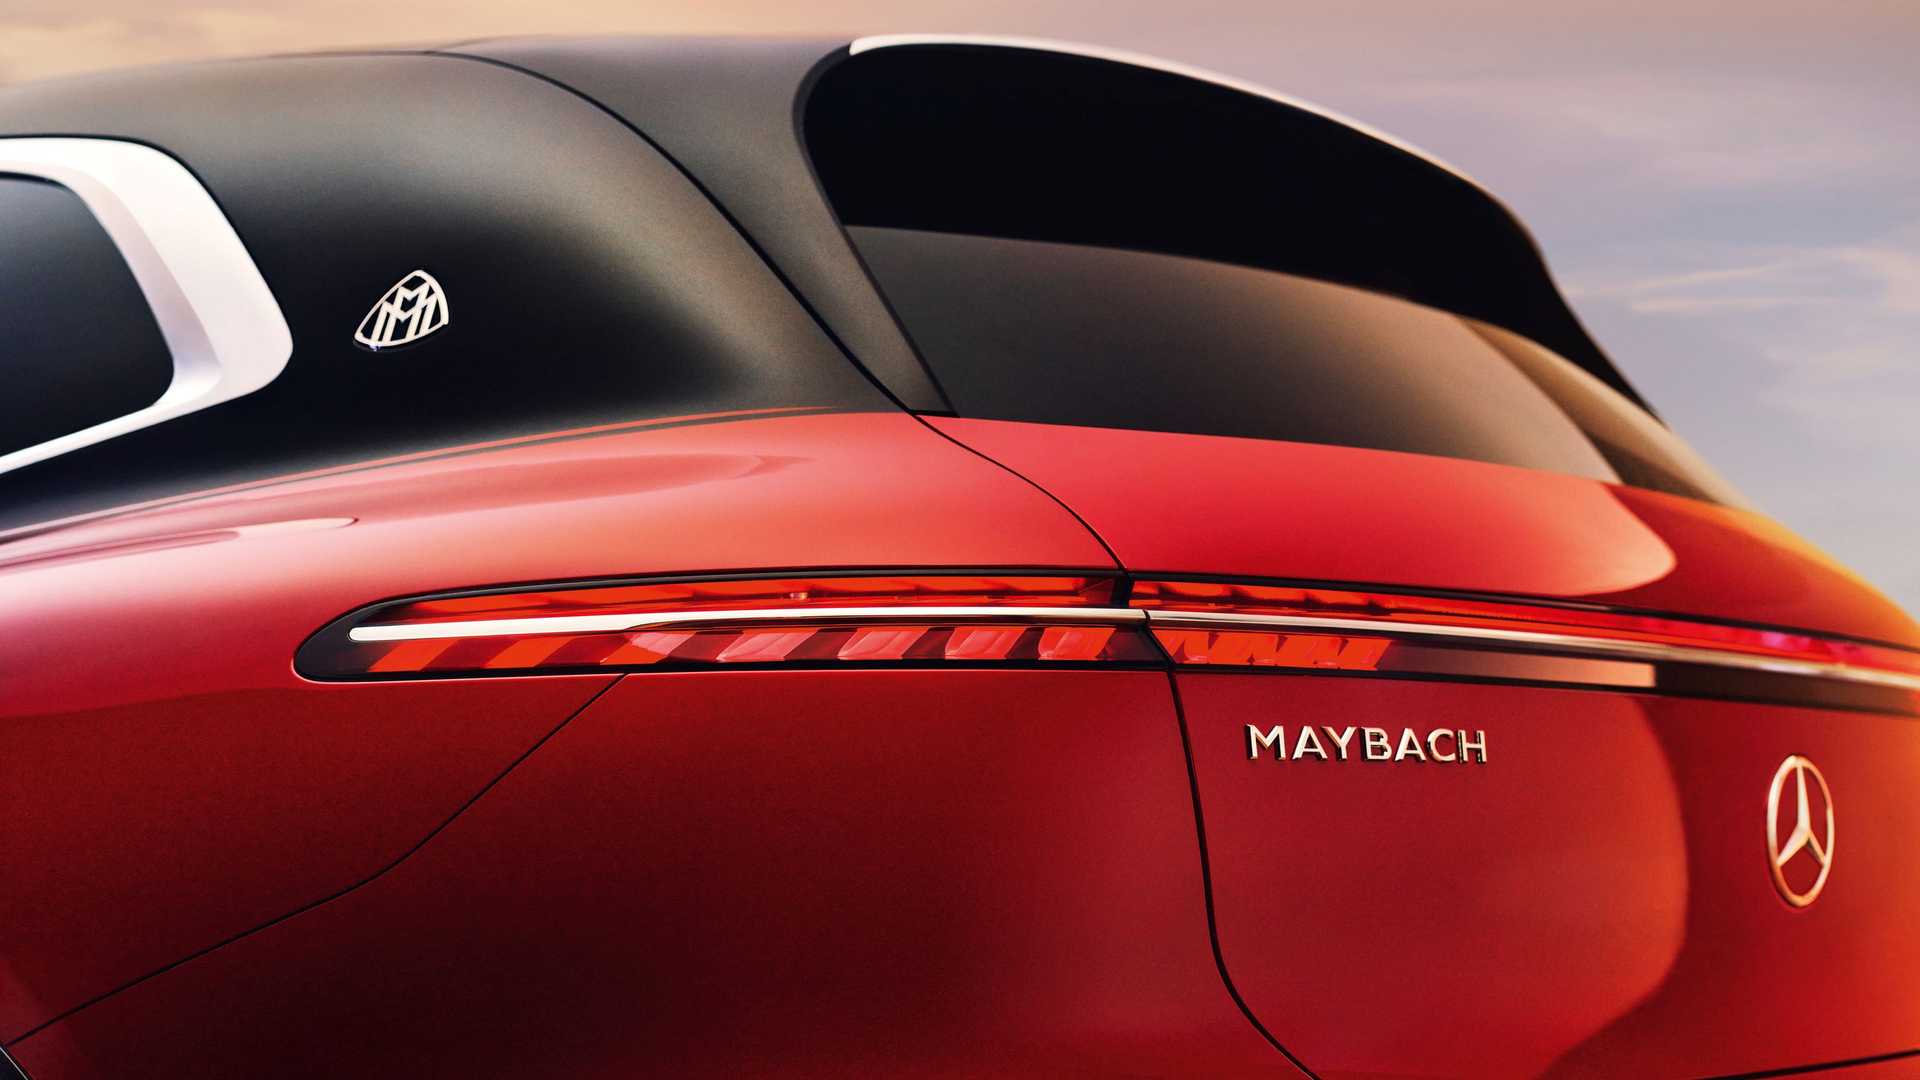 Mercedes-Maybach EQS SUV Concept - SUV siêu sang chạy điện cho tương lai mercedes-maybach-eqs-suv-concept-hatchback.jpeg